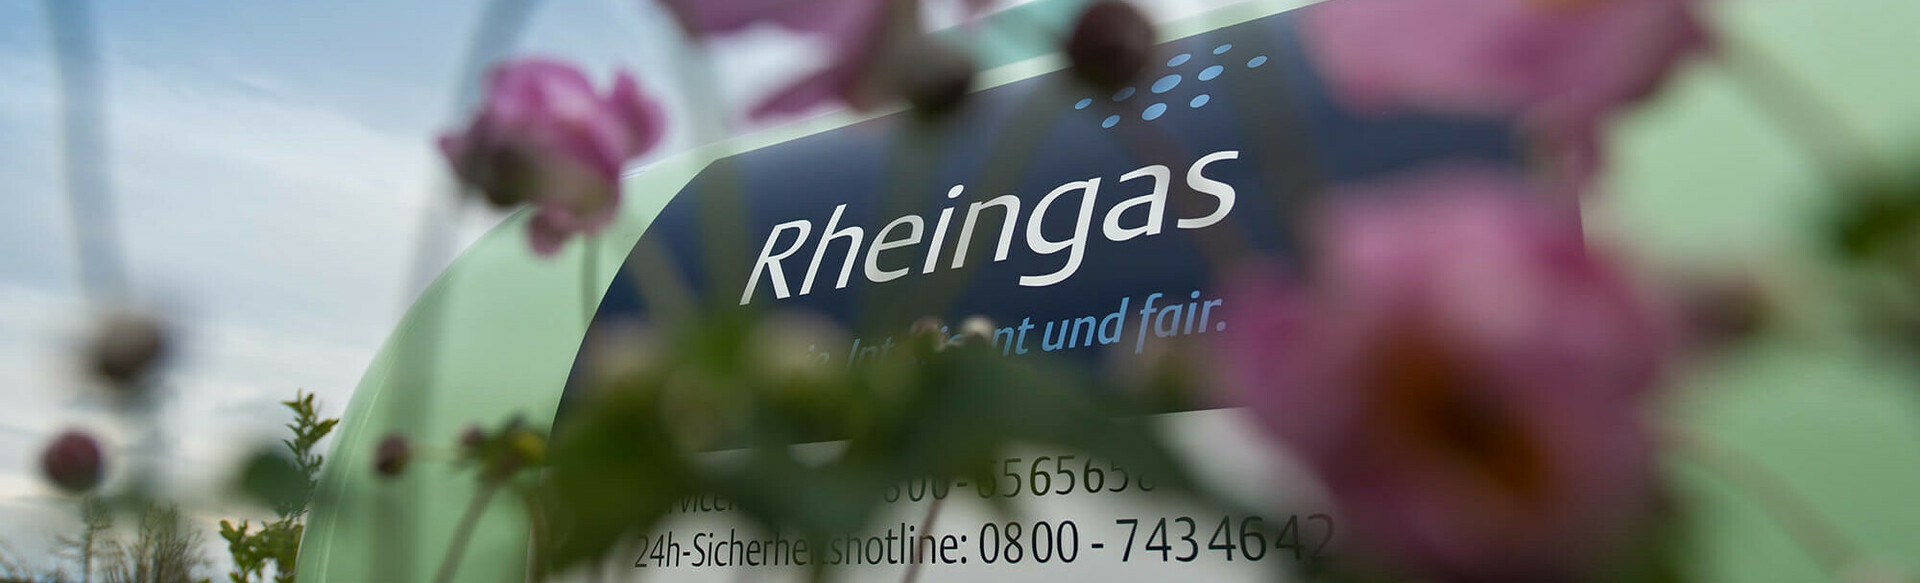 Rheingas Gastank Oberirdisch